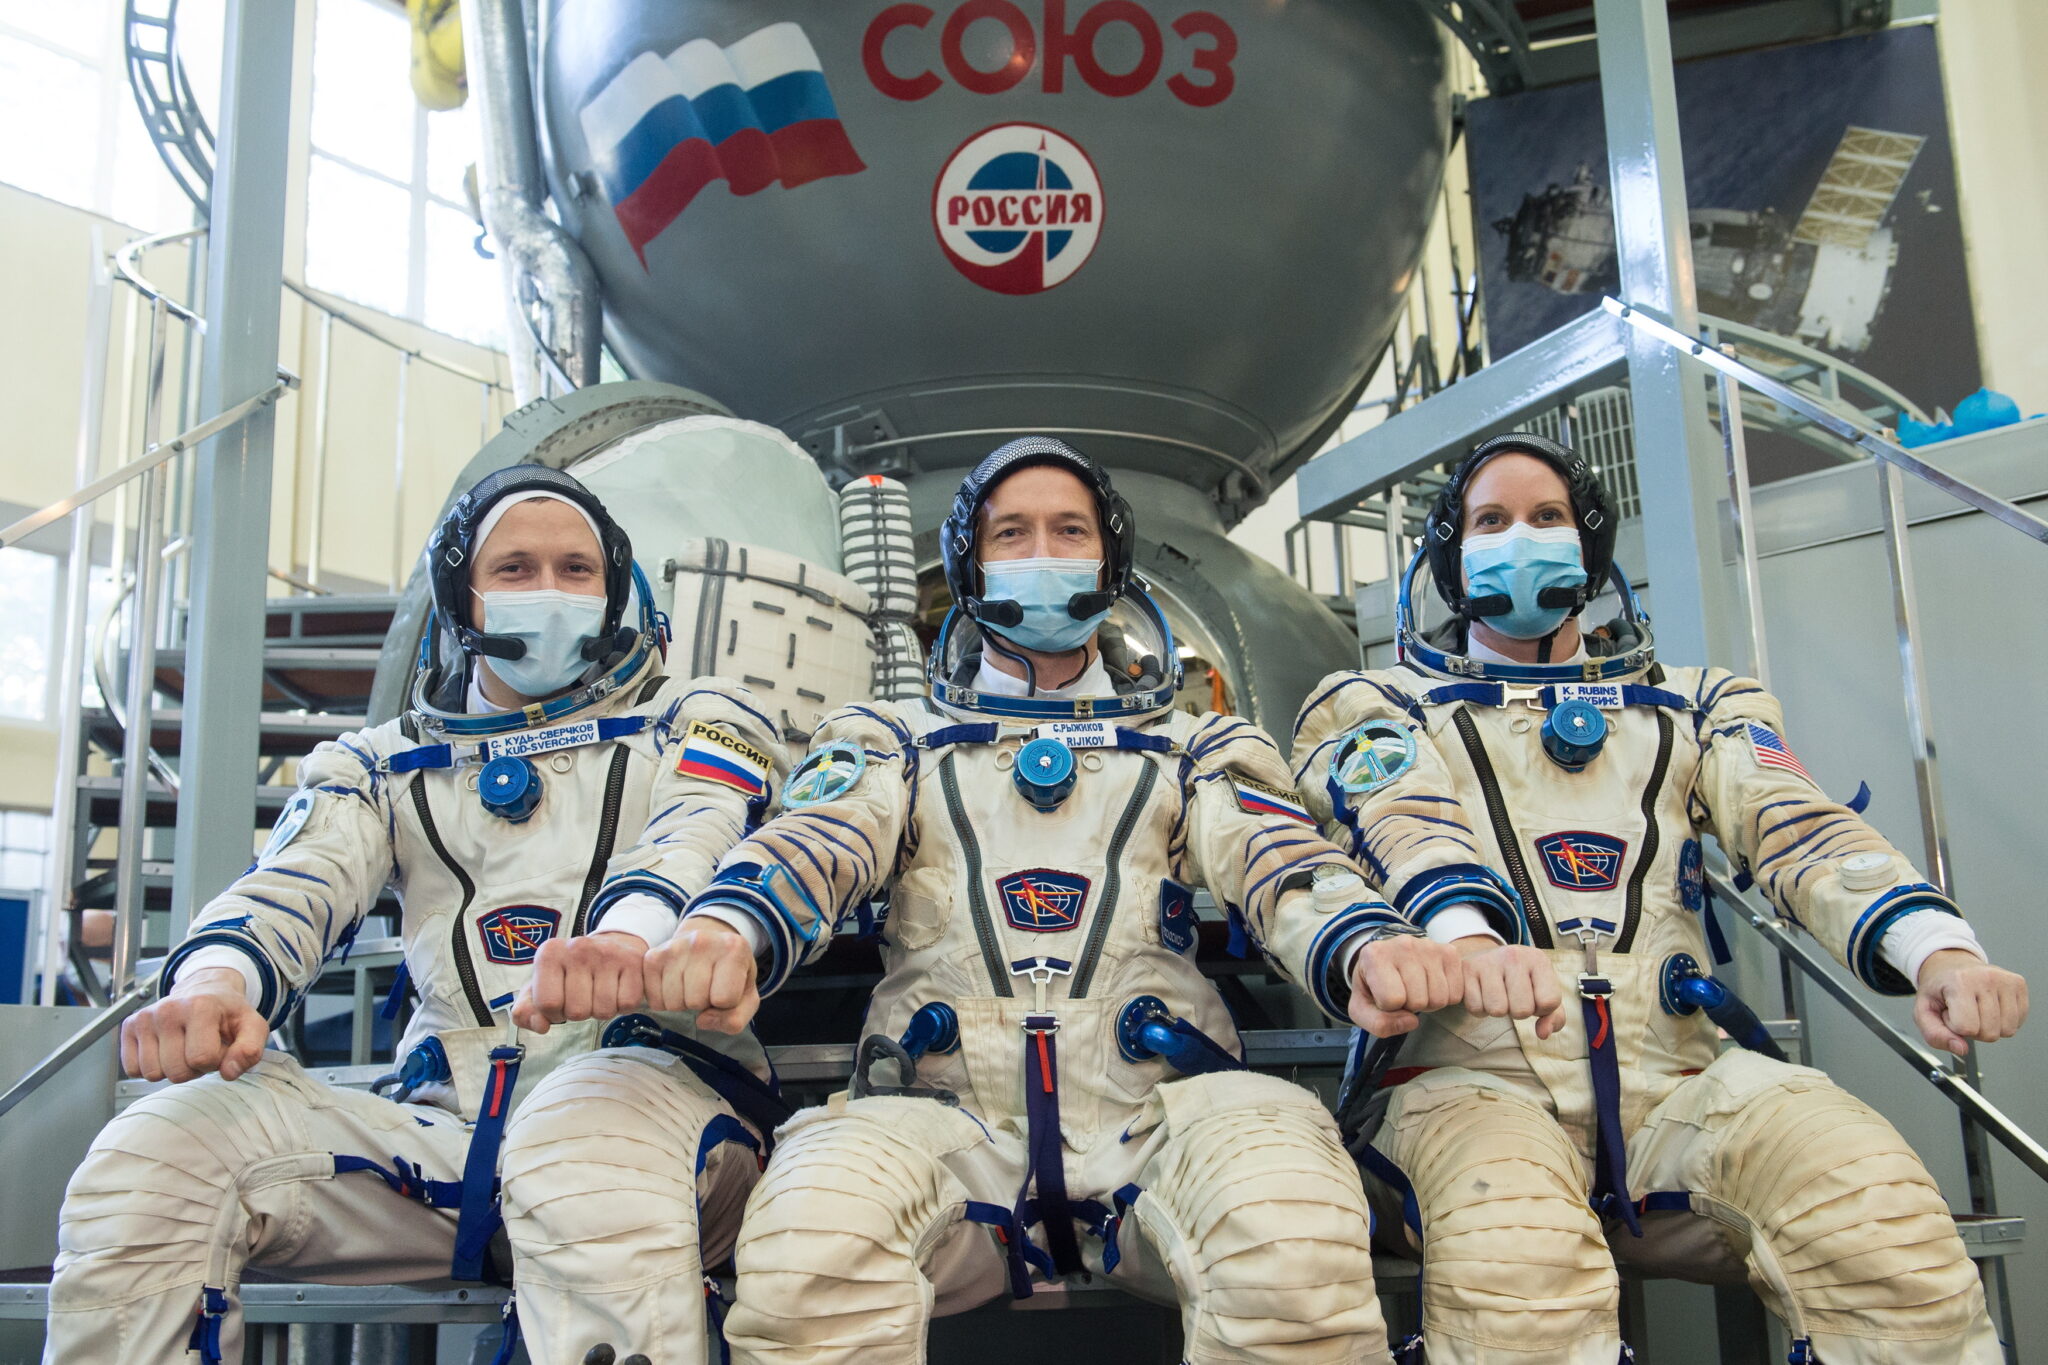 Załoga rosyjskiej misji kosmicznej na ISS. FOT. EPA/ANDREY SHELEPIN / ROSCOSMOS / HANDOUT